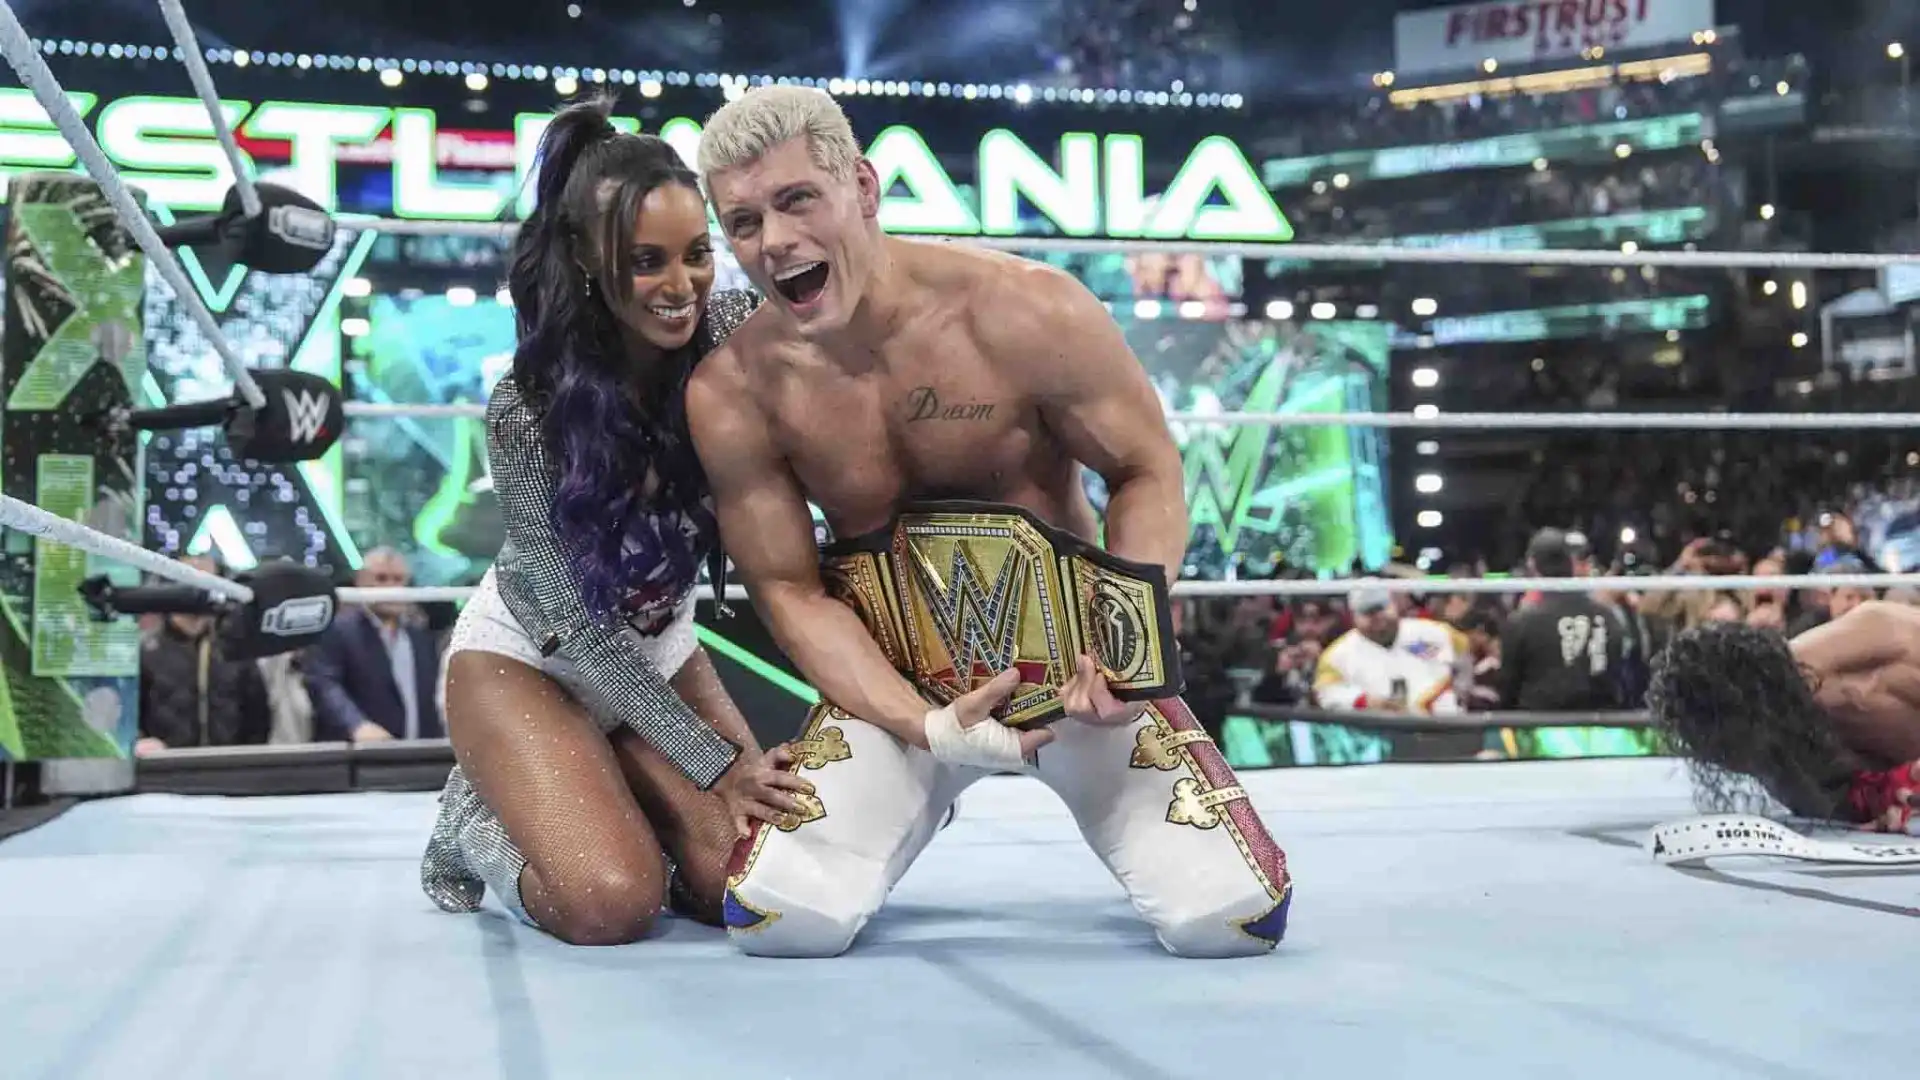 Cody però alla fine ha trionfato laureandosi campione.